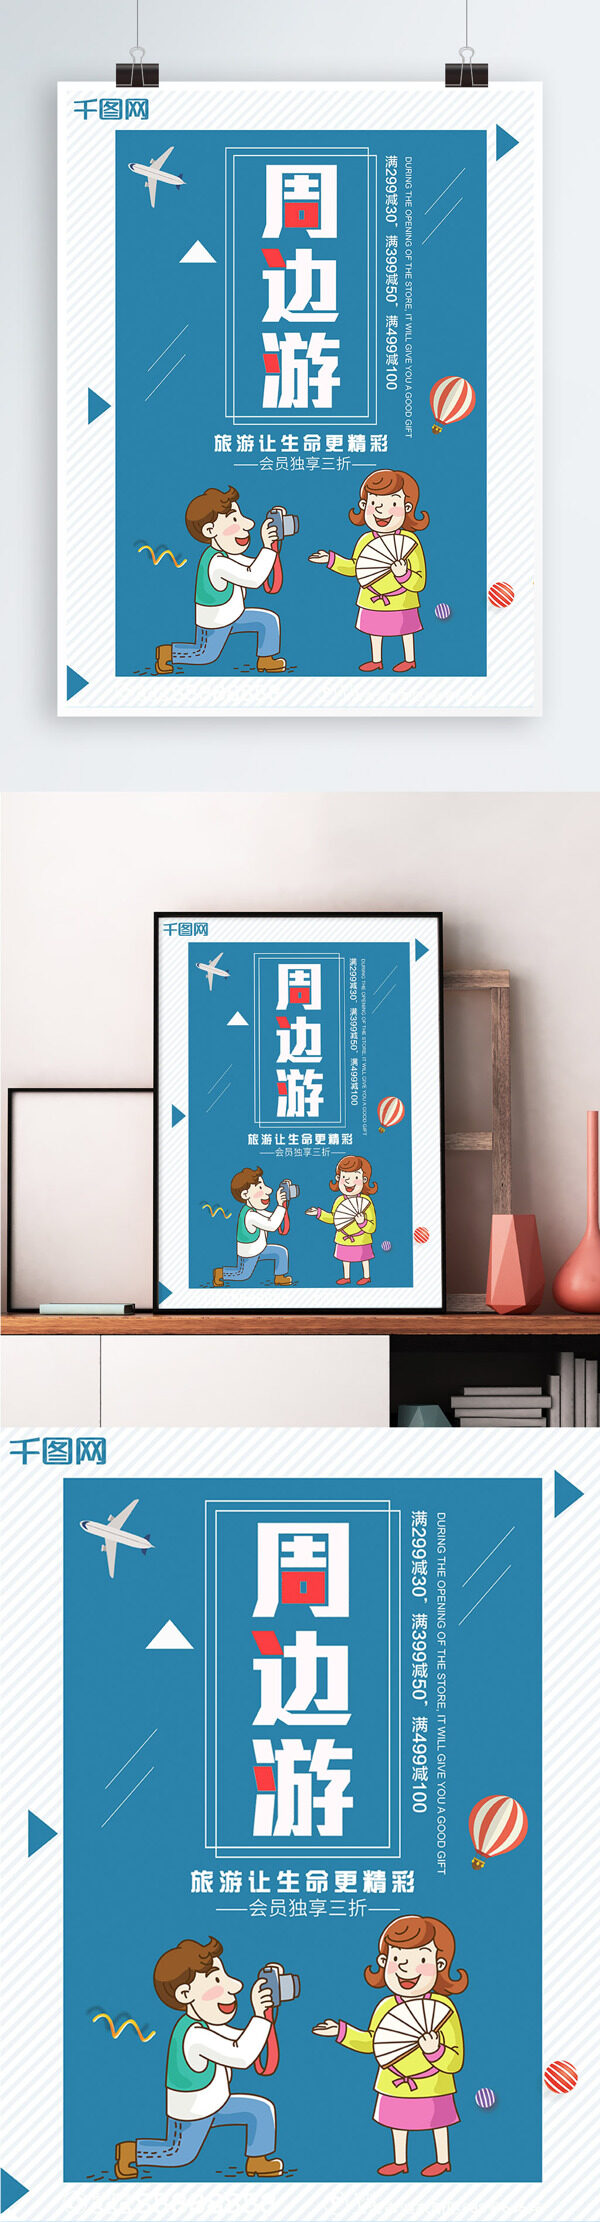 蓝色背景简约清新周边旅游宣传海报